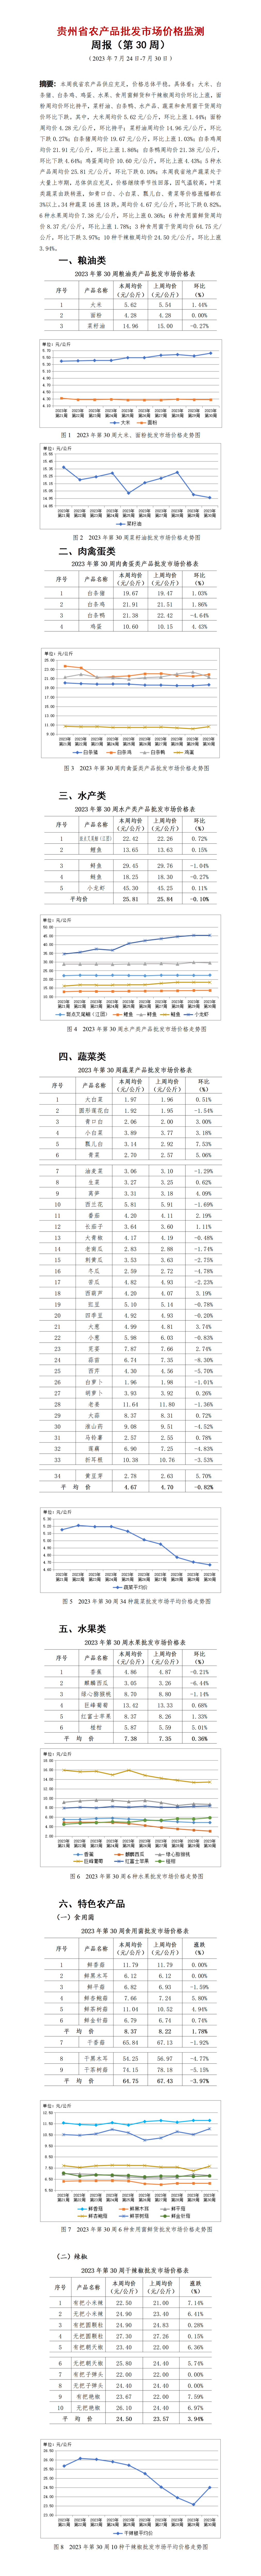 2023年30周-贵州省农产品批发市场价格监测周报-定_01